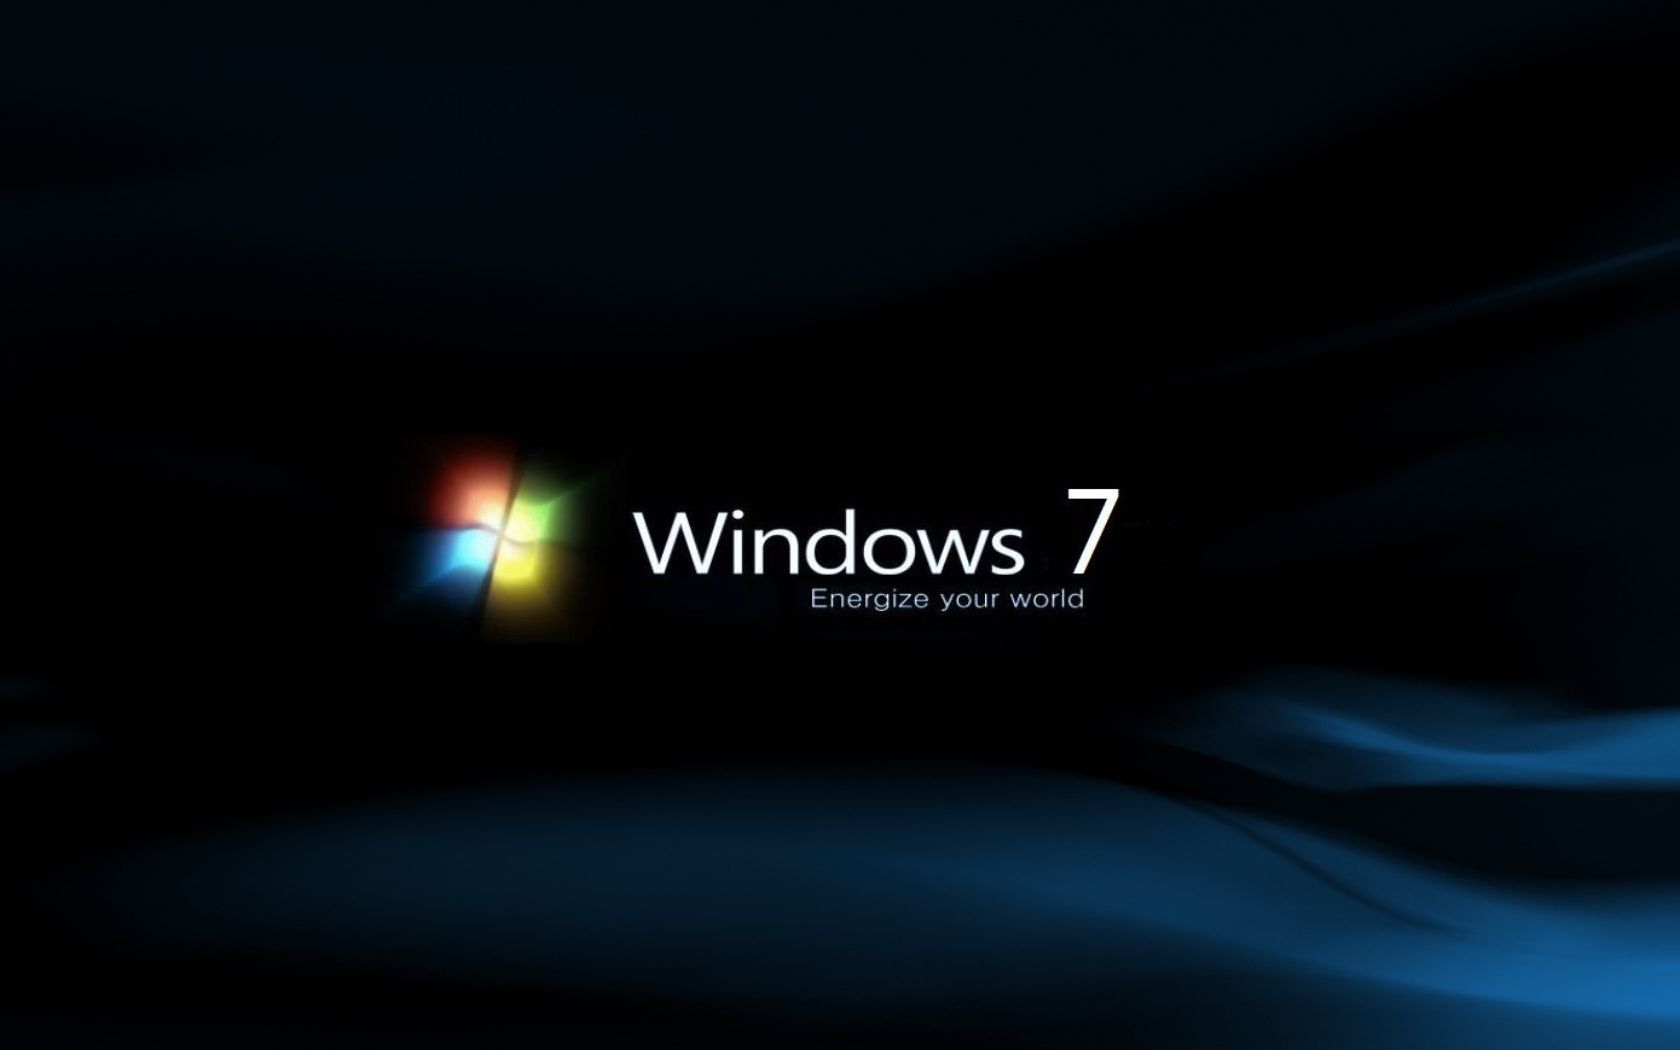 Hình nền đen Windows 7 miễn phí không phải là điều dễ tìm kiếm, nhưng bạn có thể tìm thấy chúng tại đây. Với rất nhiều mẫu hình nền đen khác nhau, bạn sẽ chắc chắn tìm được hình ảnh ưng ý cho mình. Hãy truy cập ngay và tải về miễn phí.